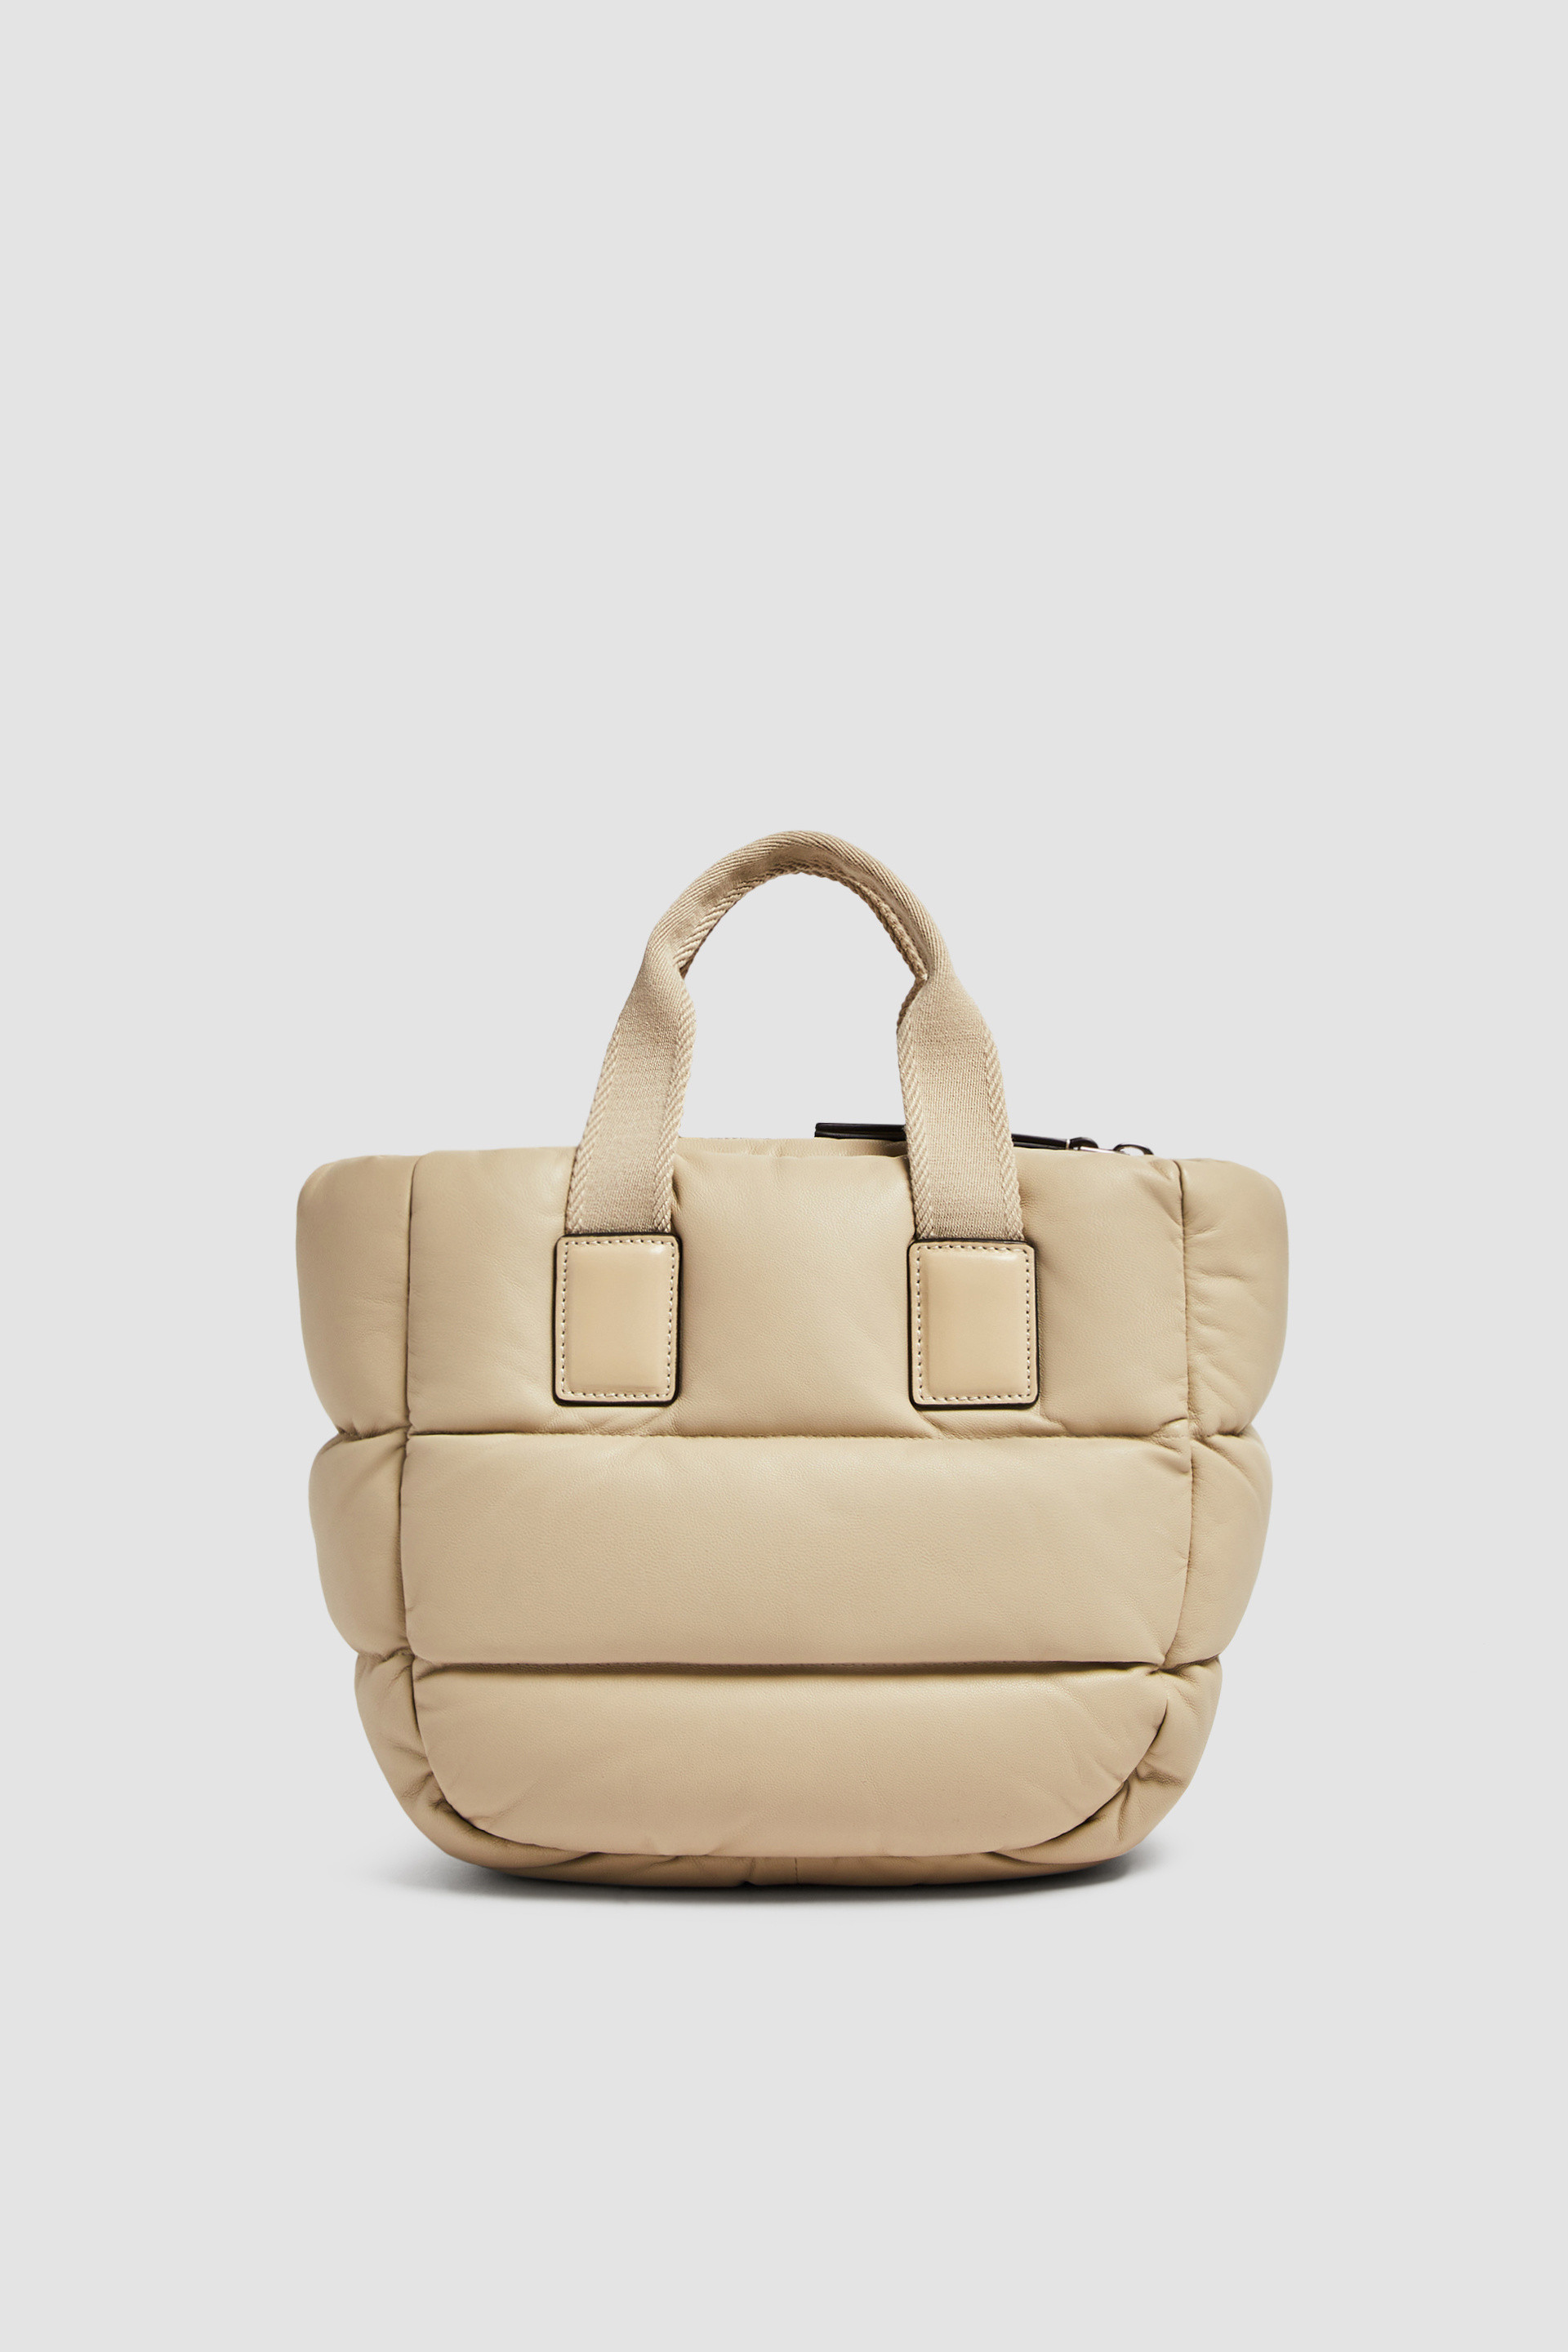 Backpacks, Handbags & Fanny Packs for Women | Moncler US